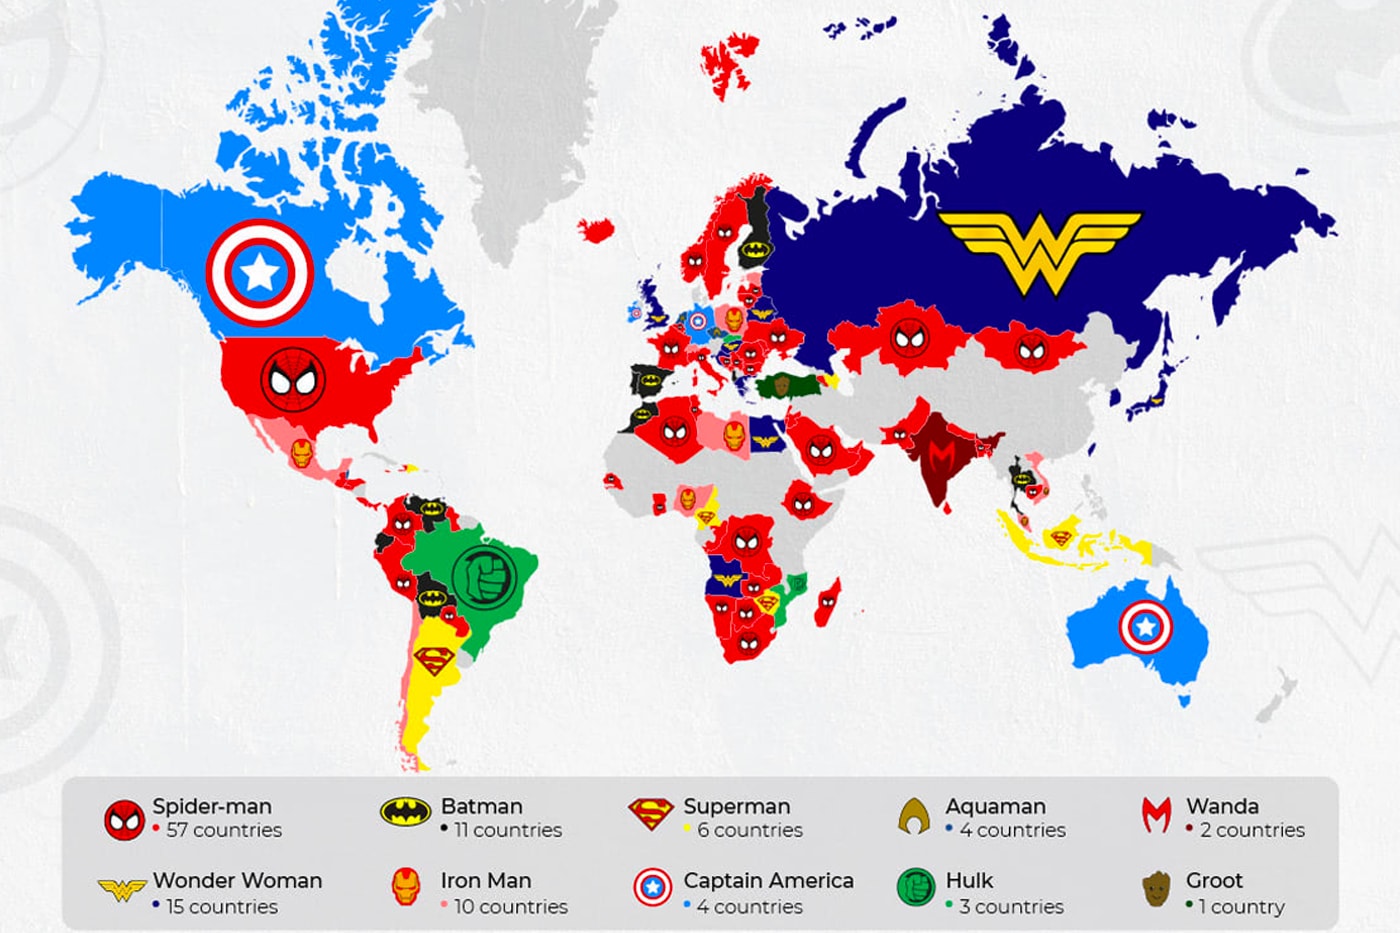 전 세계 국가별 ‘마블 vs DC’ 선호도 및 ‘인기 히어로’ 분포도가 공개됐다, 원더우먼, 타노스, 조커, 아이언맨, 스파이더맨, MCU, DCEU